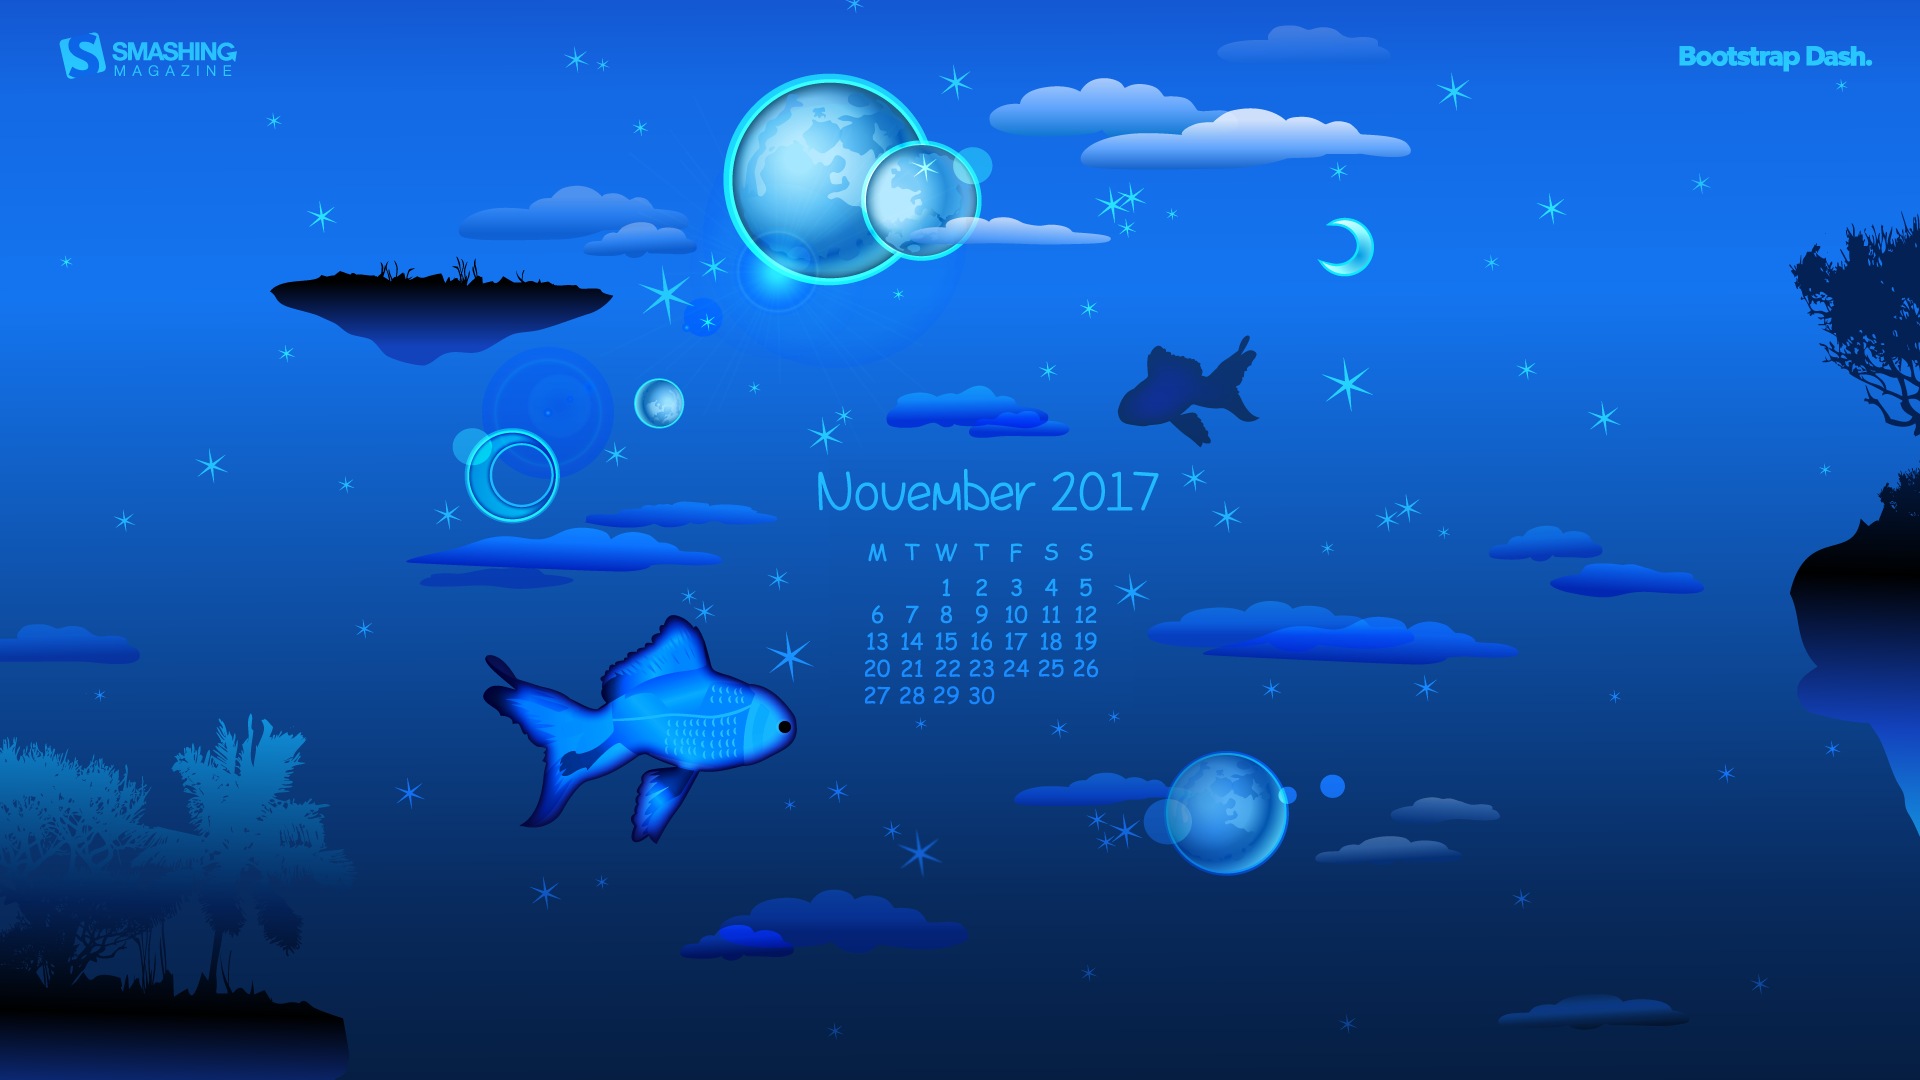 November 2017 Kalendertapete #9 - 1920x1080